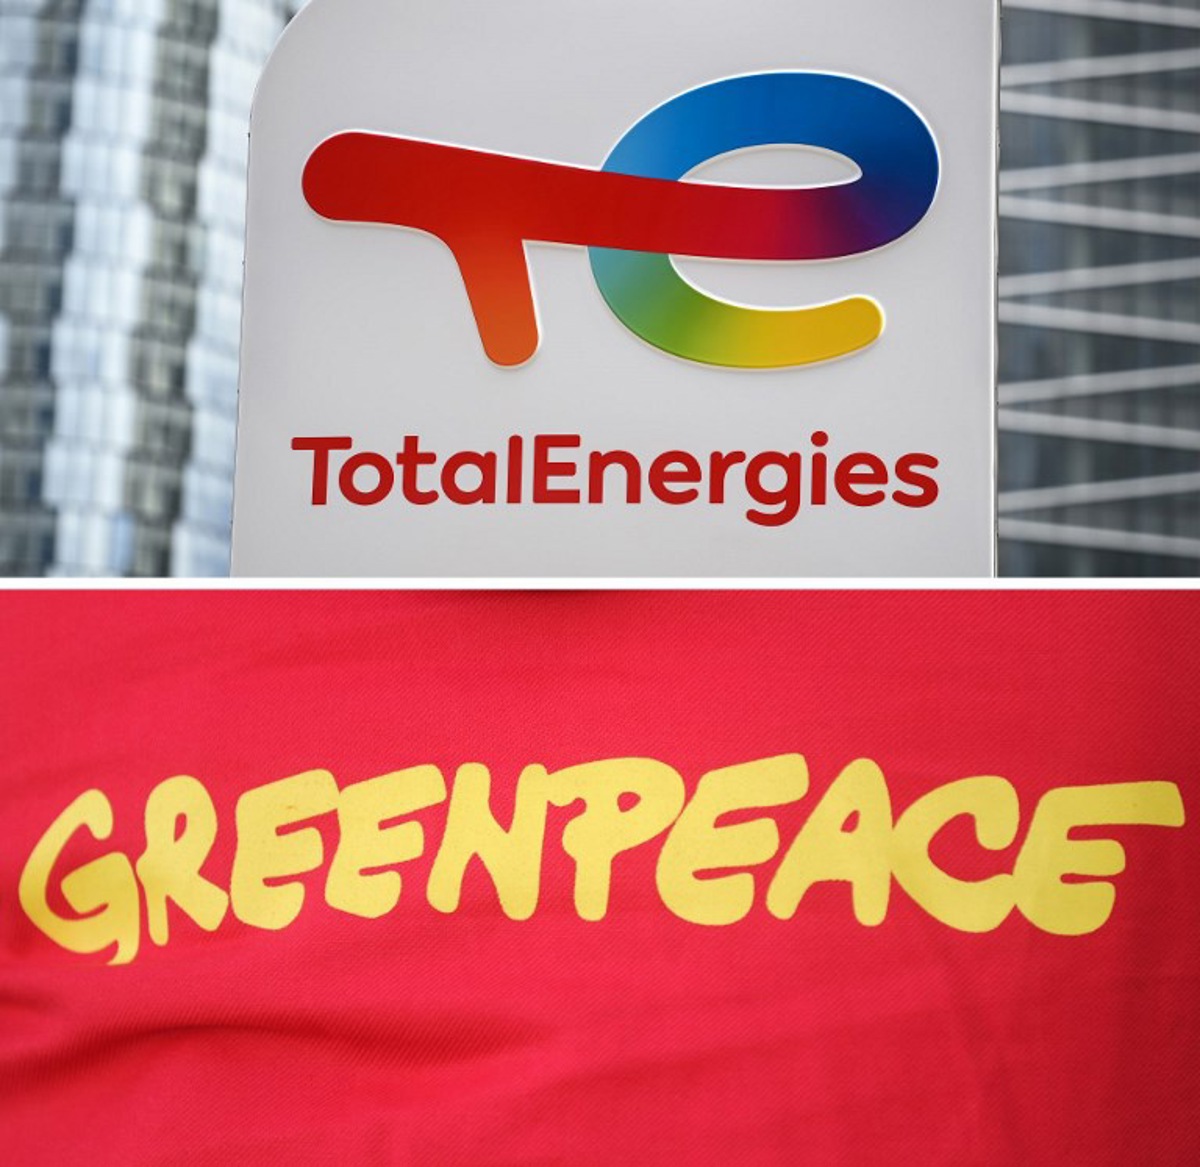 climat - la justice française annule la procédure de totalenergies contre greenpeace